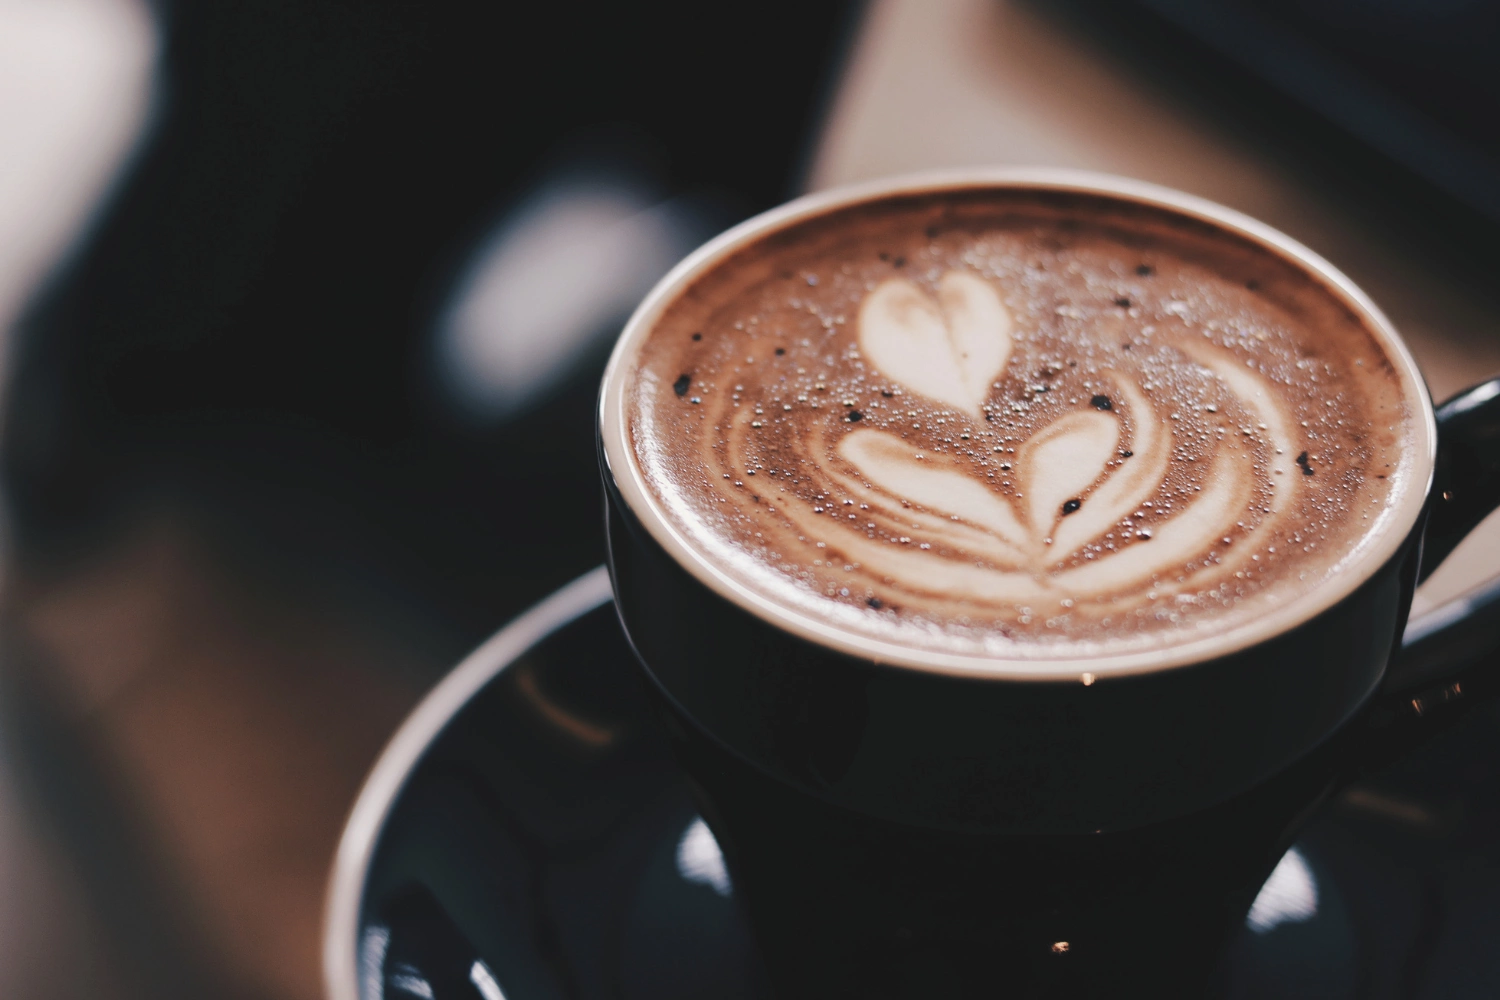 Kaffee mit Muster im Milchschaum